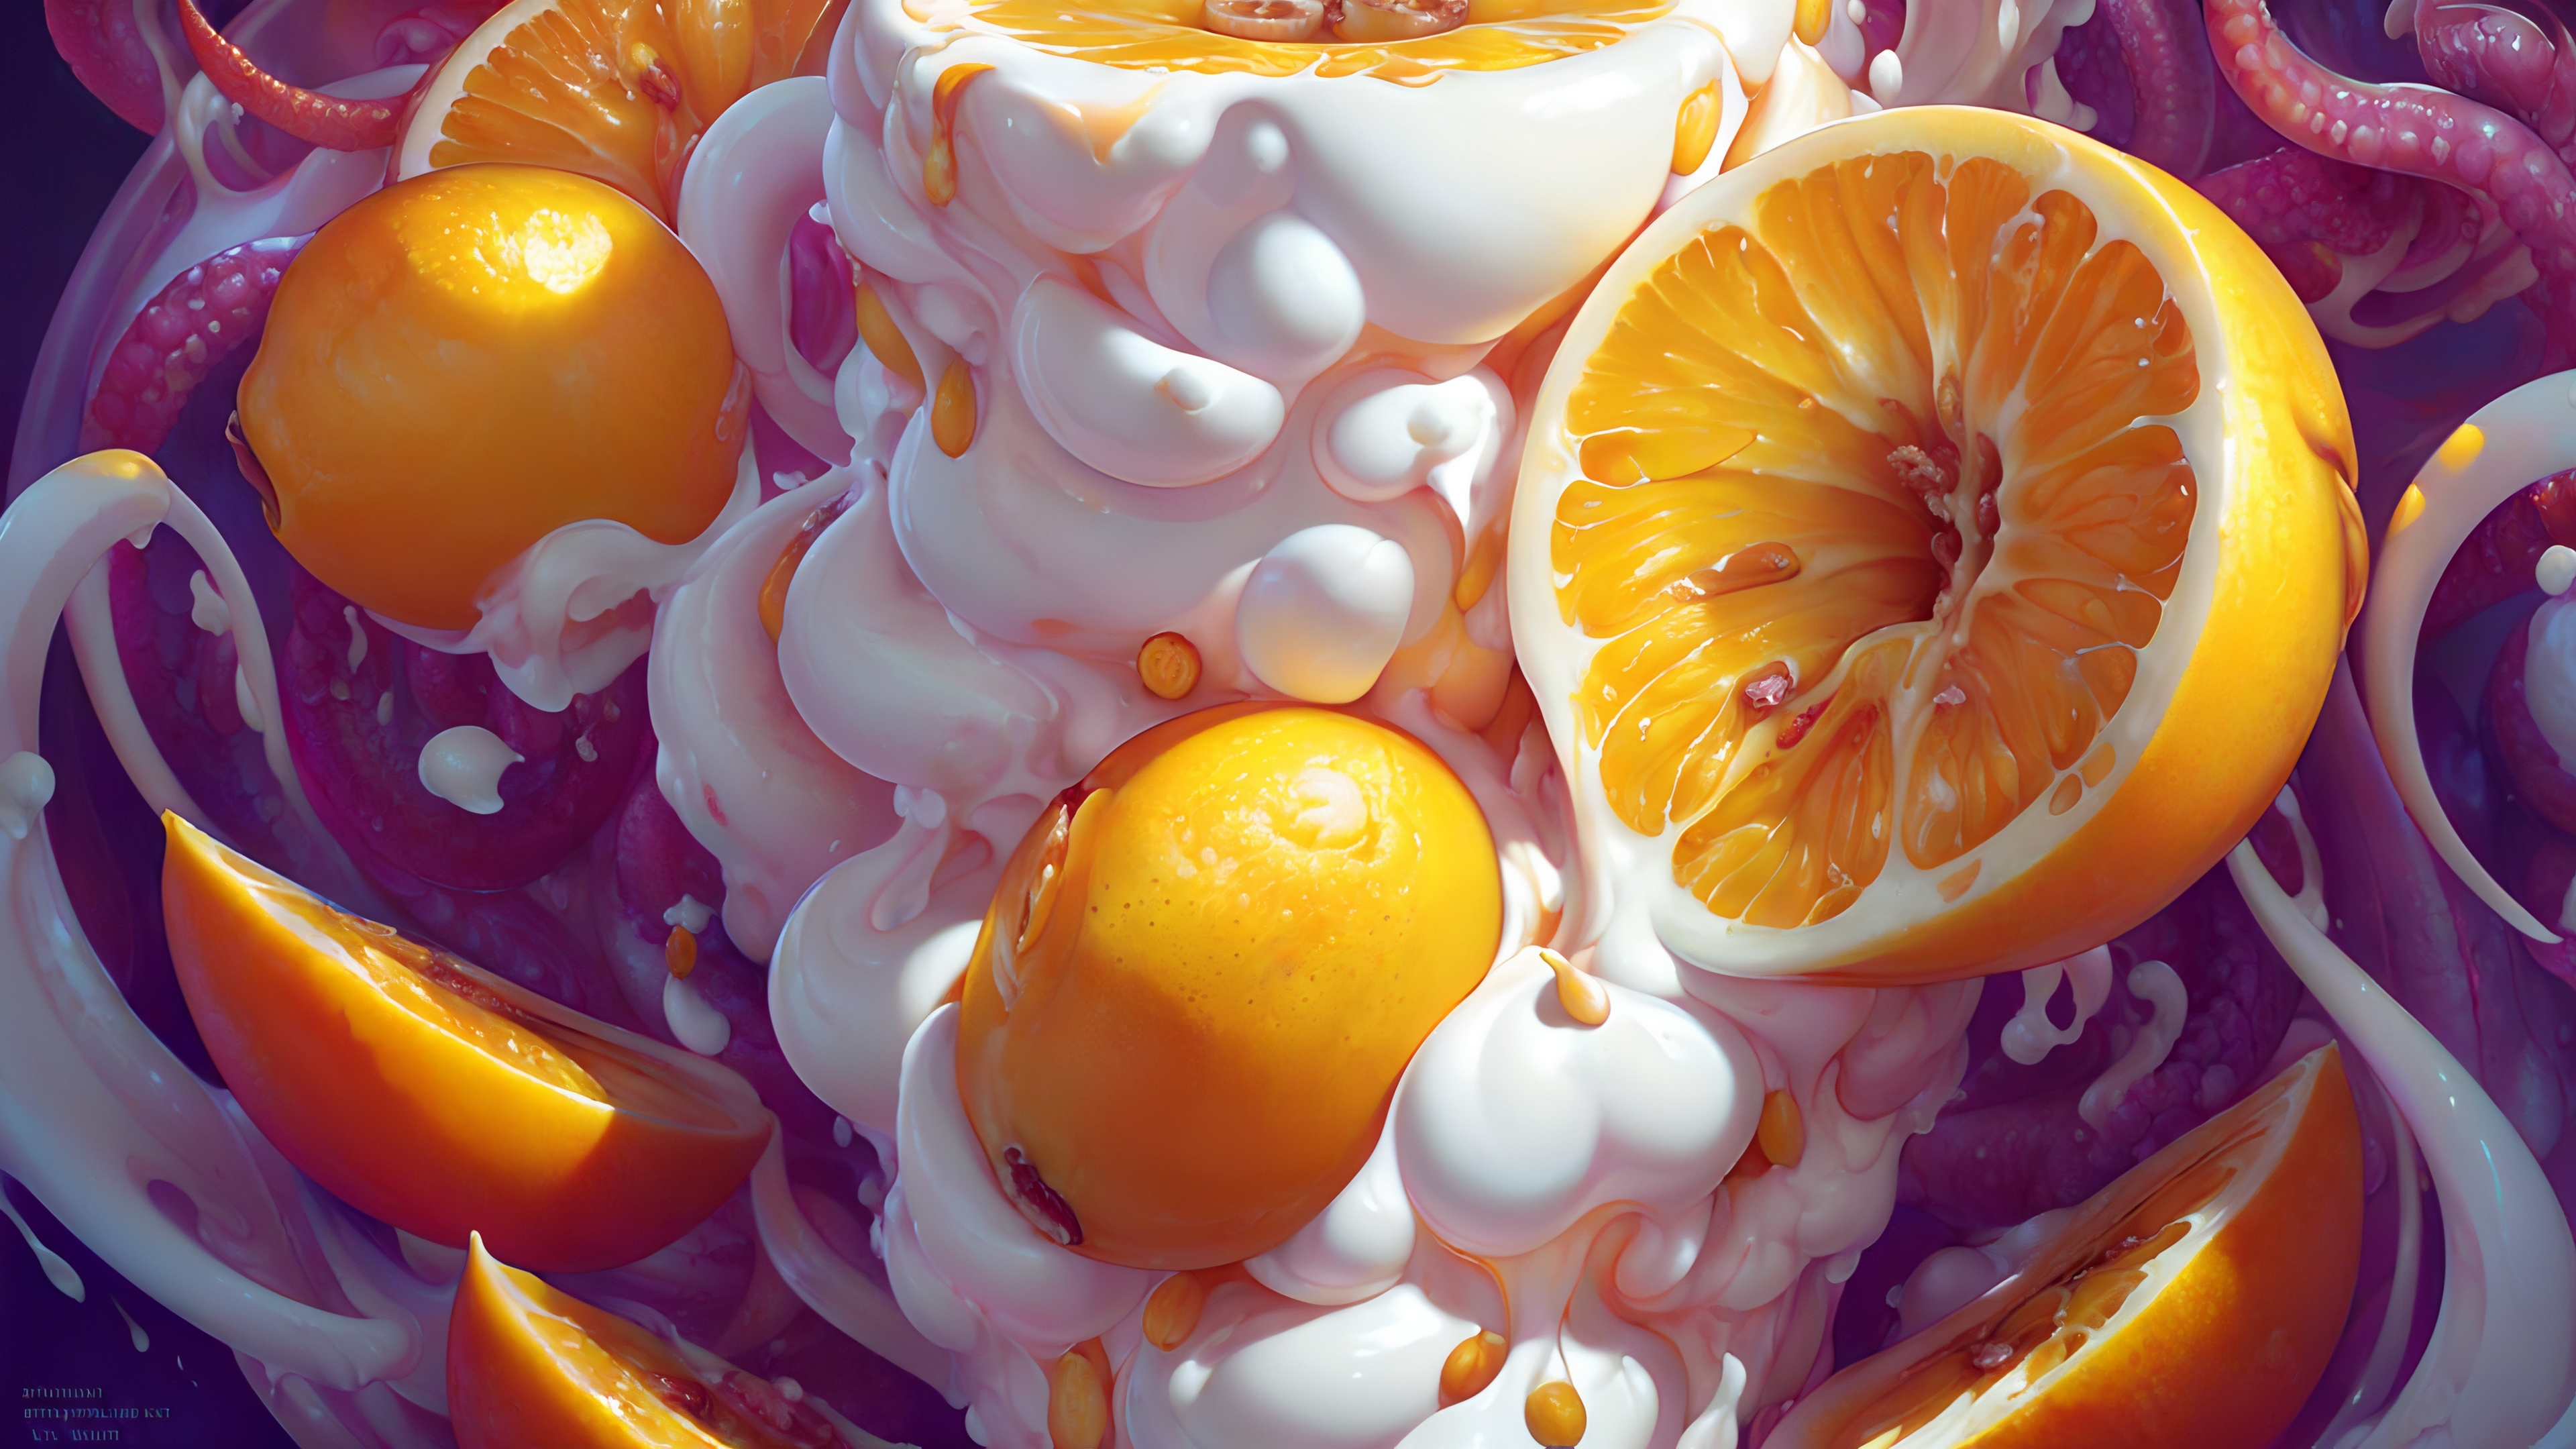 Oranges mixed with yogurt